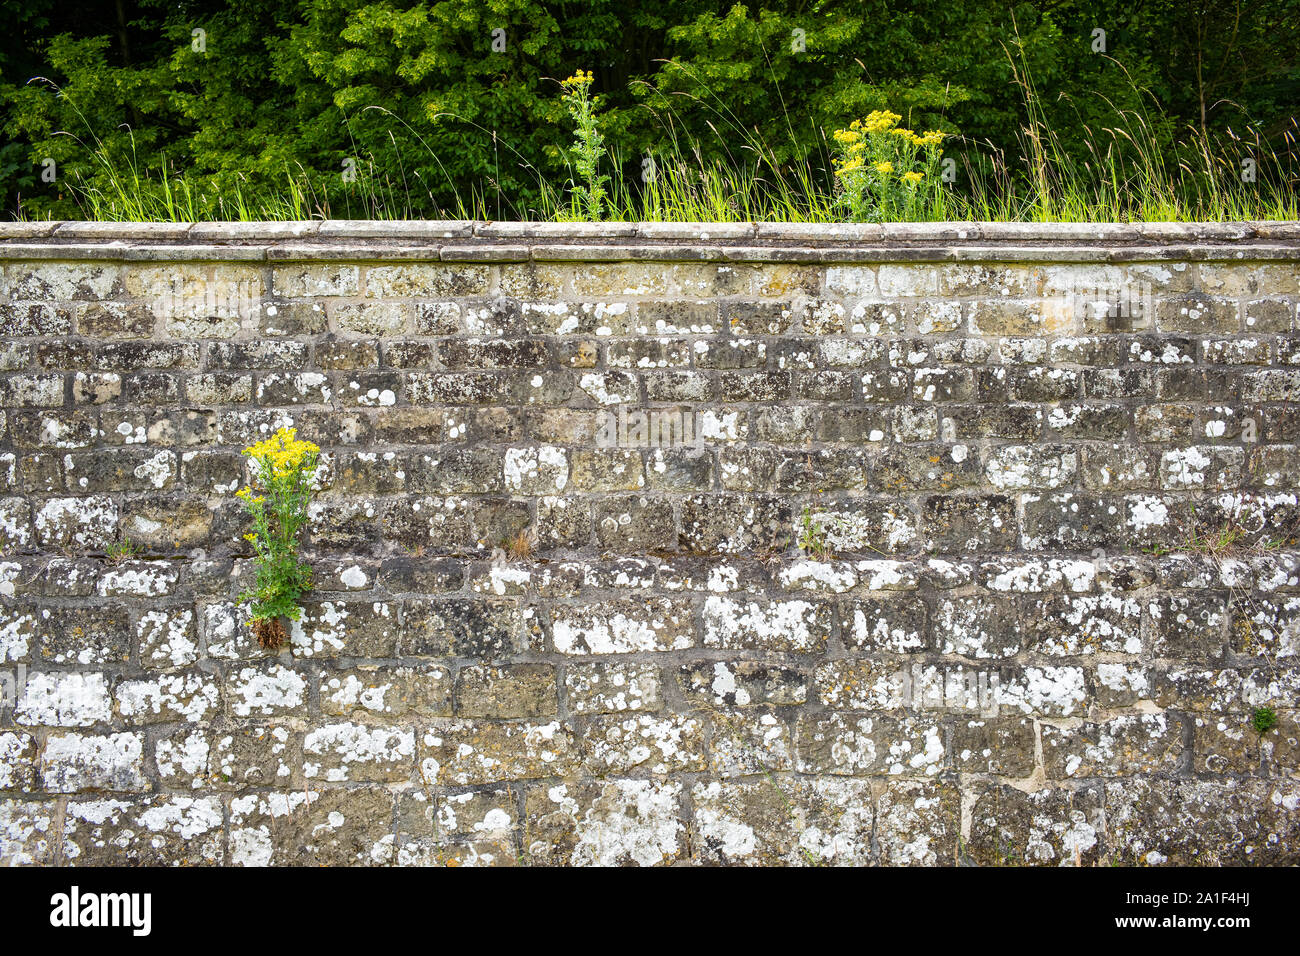 Séneçon jacobée, un toxique (pour les gros animaux) mais de grande production de nectar (pour les insectes) de lutte contre les mauvaises herbes en croissance sur un mur d'enceinte, le château Howard, Yorkshire, UK Banque D'Images